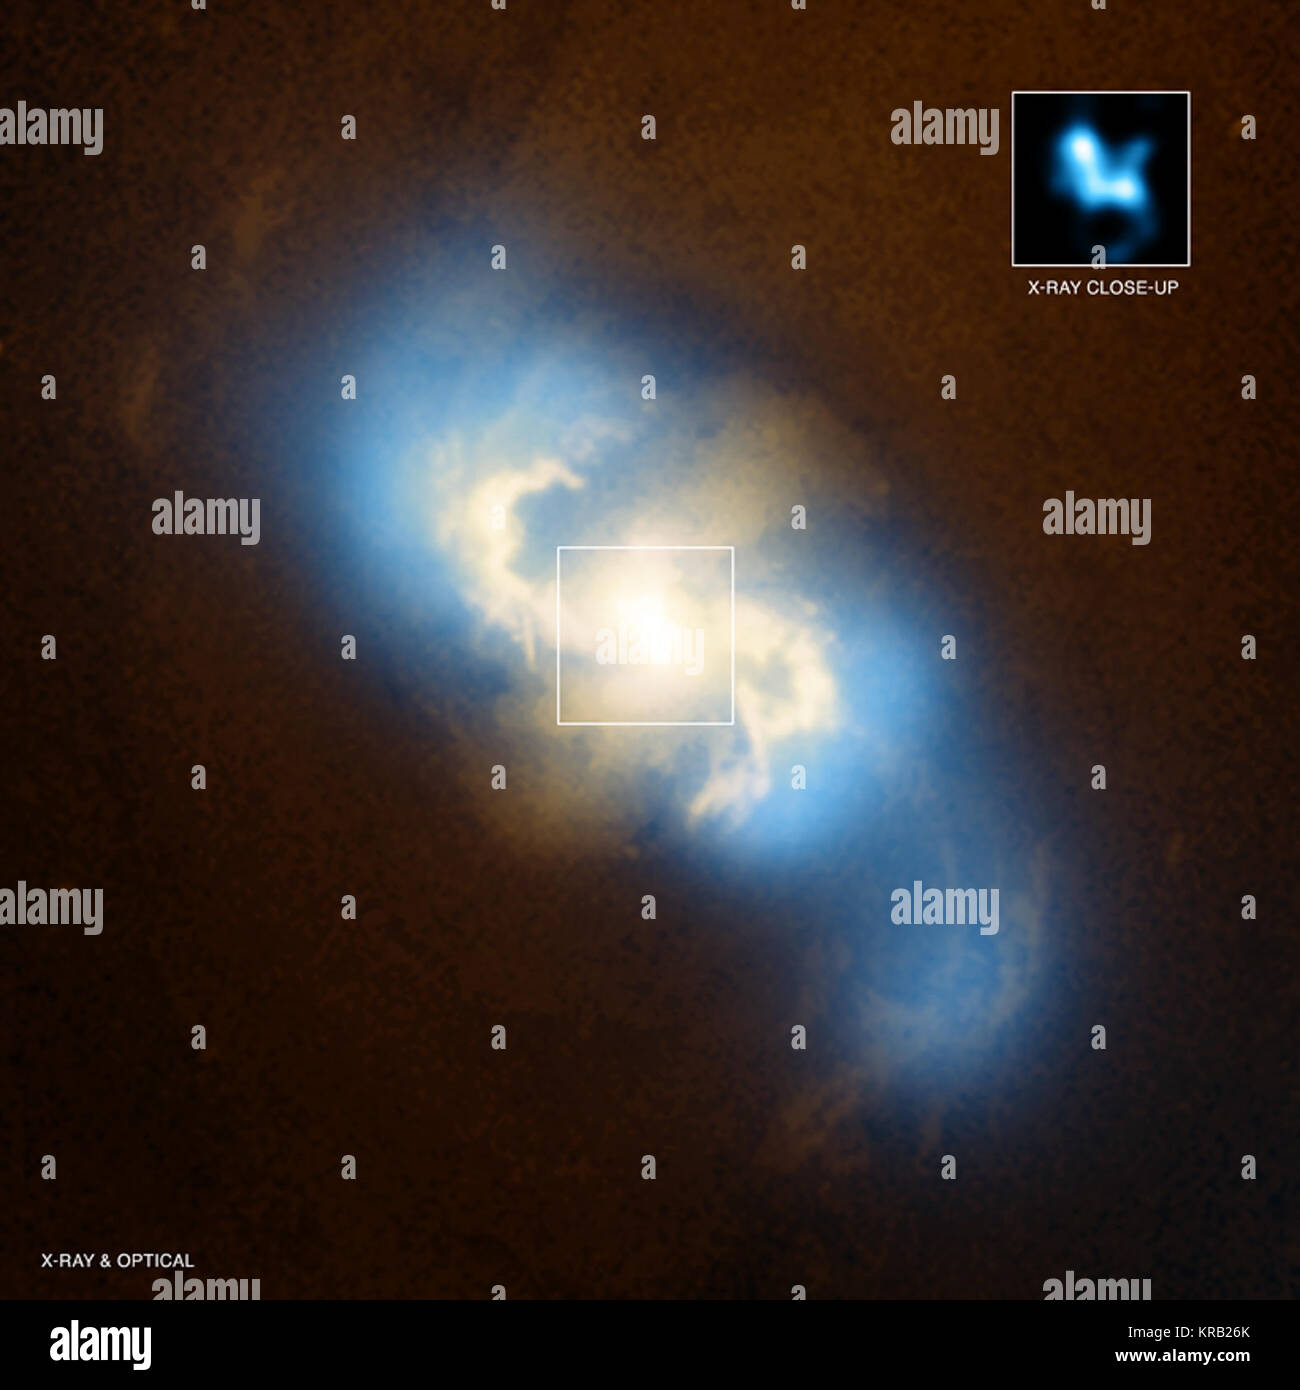 Beweise für ein paar supermassive schwarze Löcher in einer Spiralgalaxie hat in den Daten aus der NASA Chandra X-ray Observatory gefunden worden. Dieses Bild ist ein Verbund von Röntgenstrahlen von Chandra (blau) und optischen Daten aus dem Hubble Space Telescope (orange und gelb) der Spiralgalaxie NGC 3393. Inzwischen hat sich die Inset zeigt die zentrale Region der NGC 3993 als eingehalten, gerade von Chandra. Zwei separate Gipfeln der X-ray Emission (ca. um 11 Uhr und 4 Uhr) deutlich in der eingefügten Feld gesehen werden kann. Diese beiden Quellen sind Schwarze Löcher, die aktiv sind, die X-ray Emission als Gas fällt Stockfoto